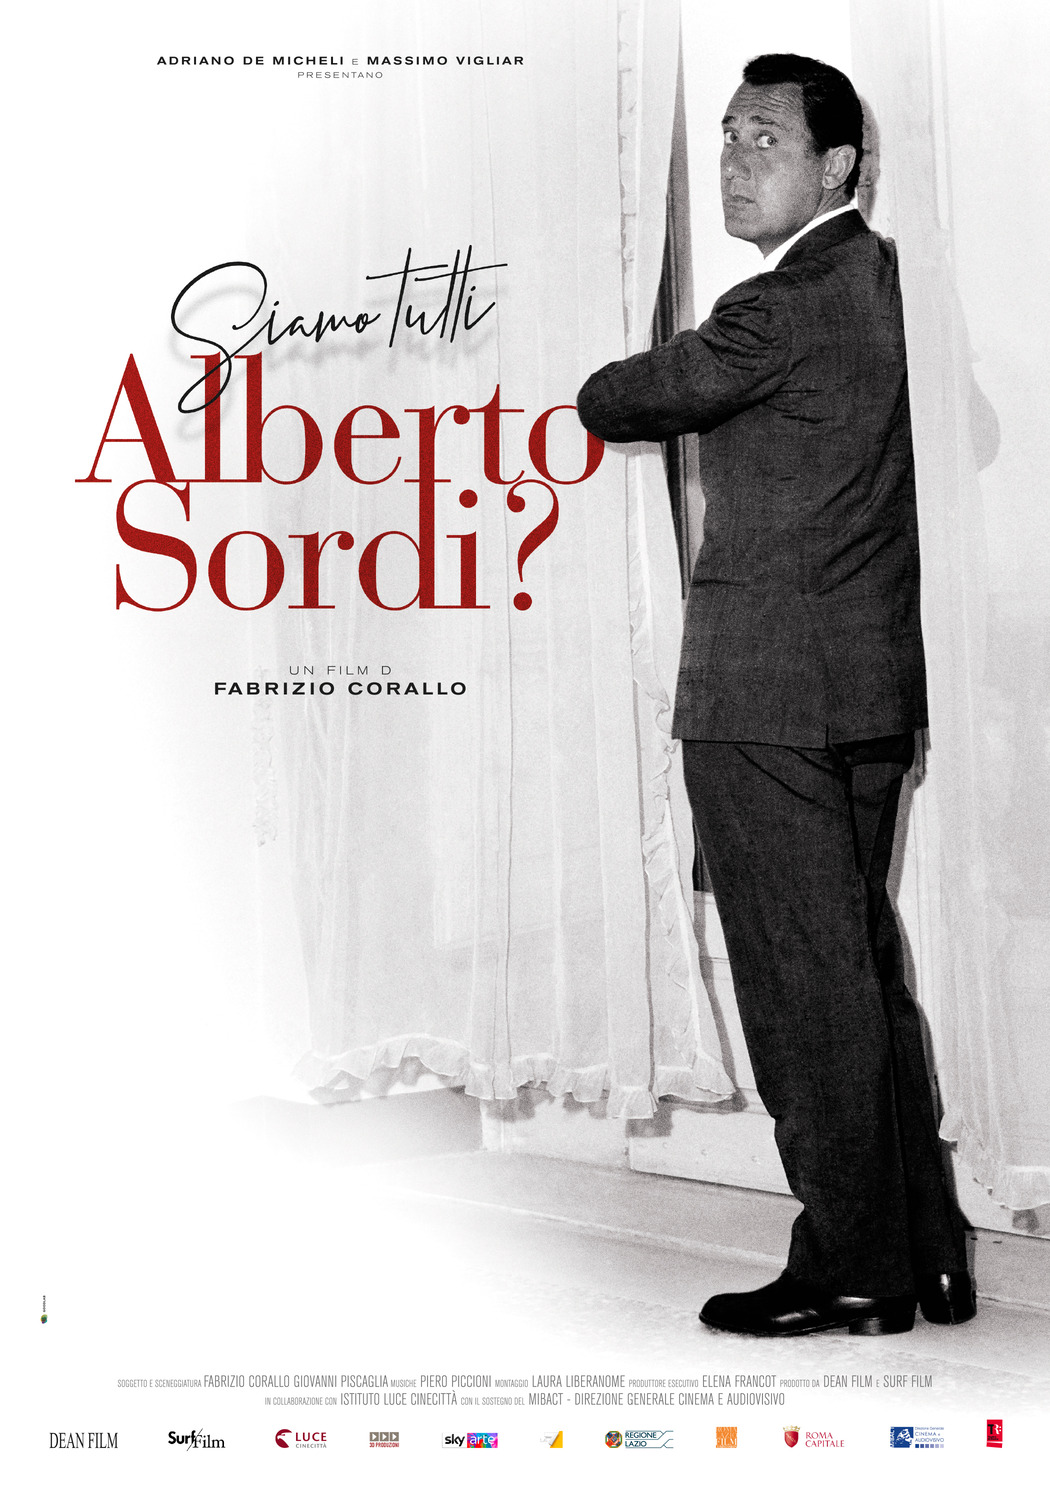 Extra Large Movie Poster Image for Siamo tutti Alberto Sordi? 